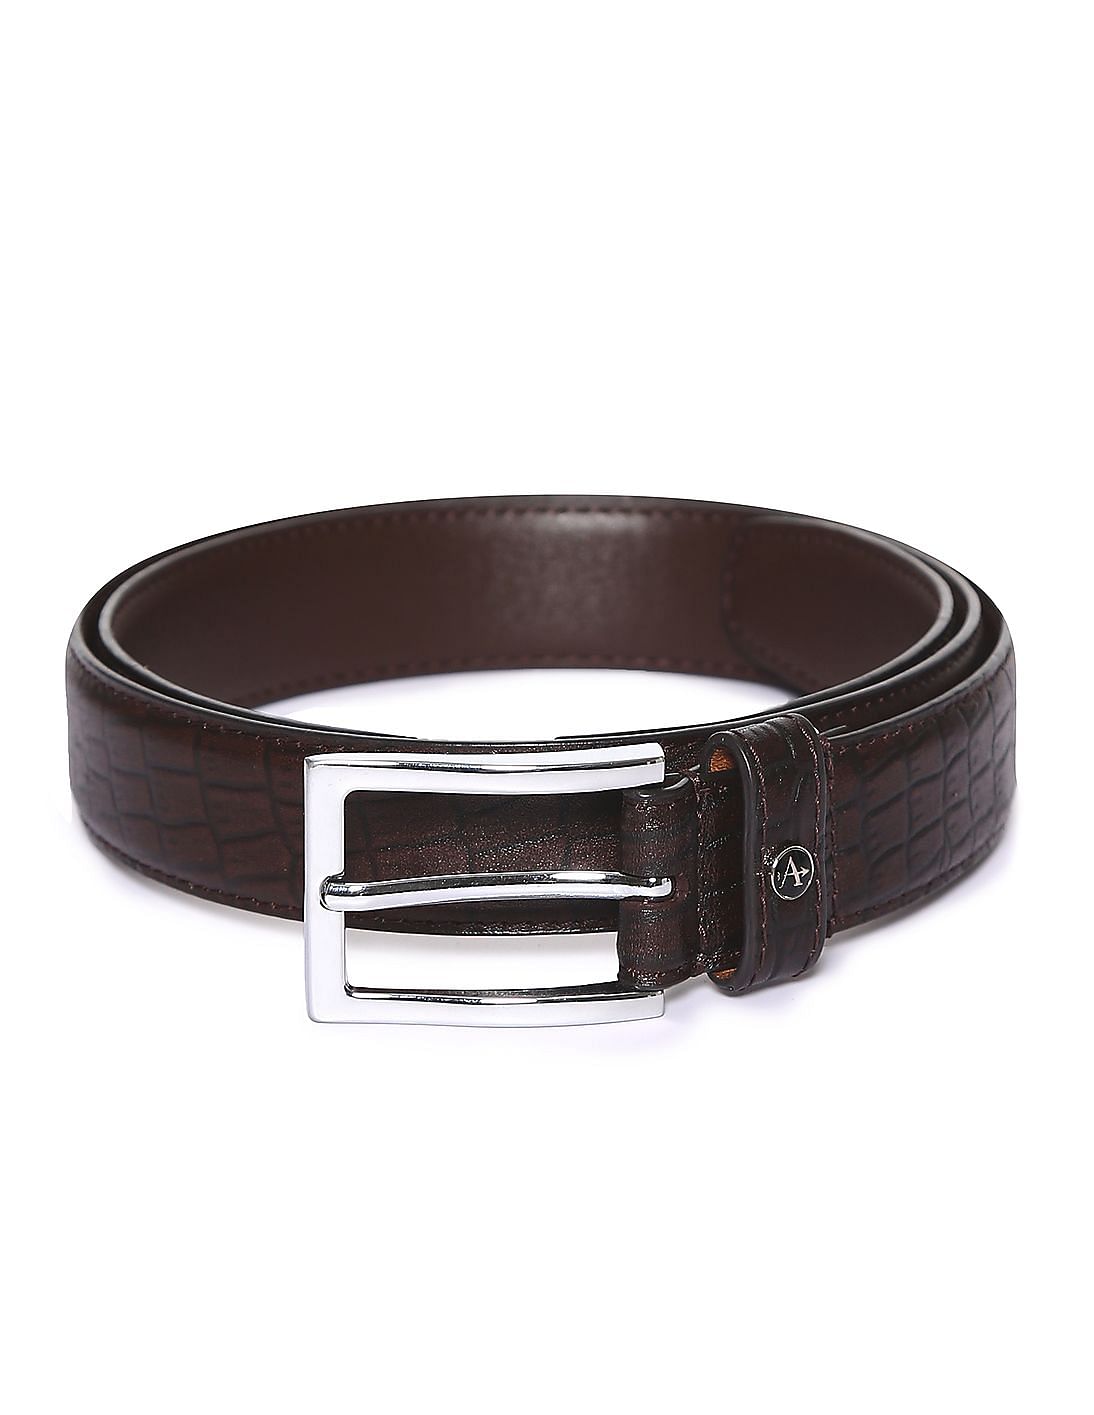 Buy Arrow Textured Leather Belt - NNNOW.com